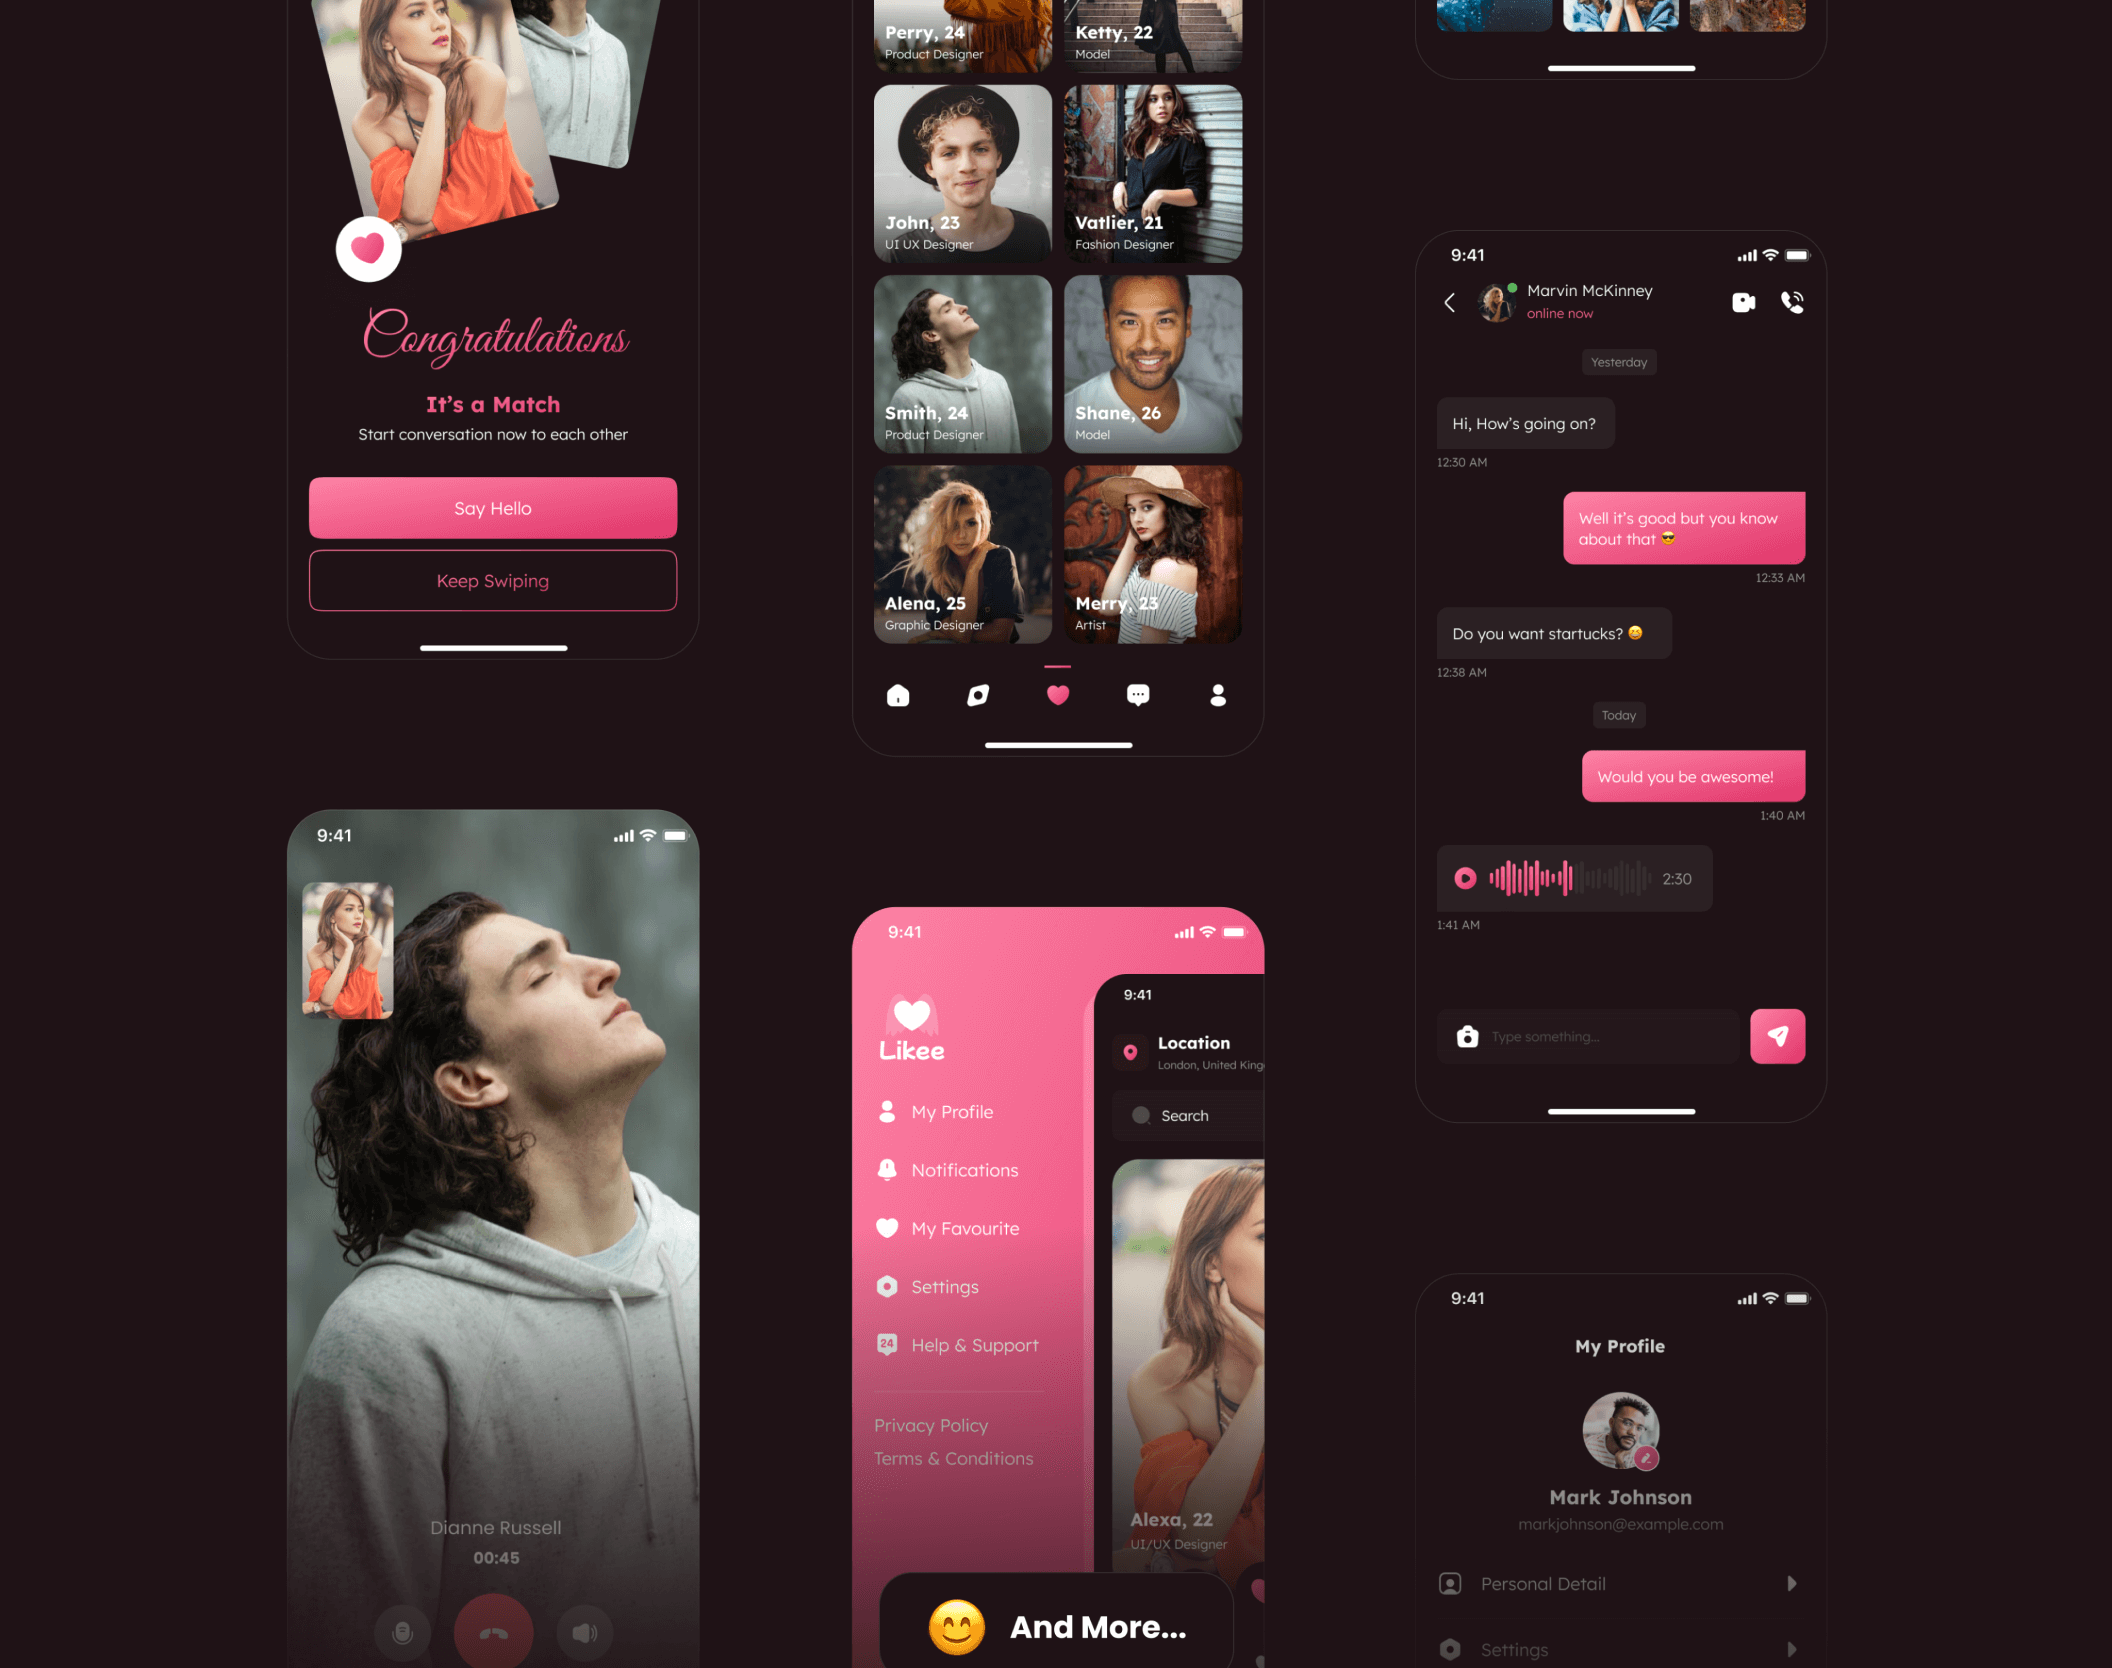 情侣爱情社交类约会应用UI套件Likee – Dating App UI Kit插图16